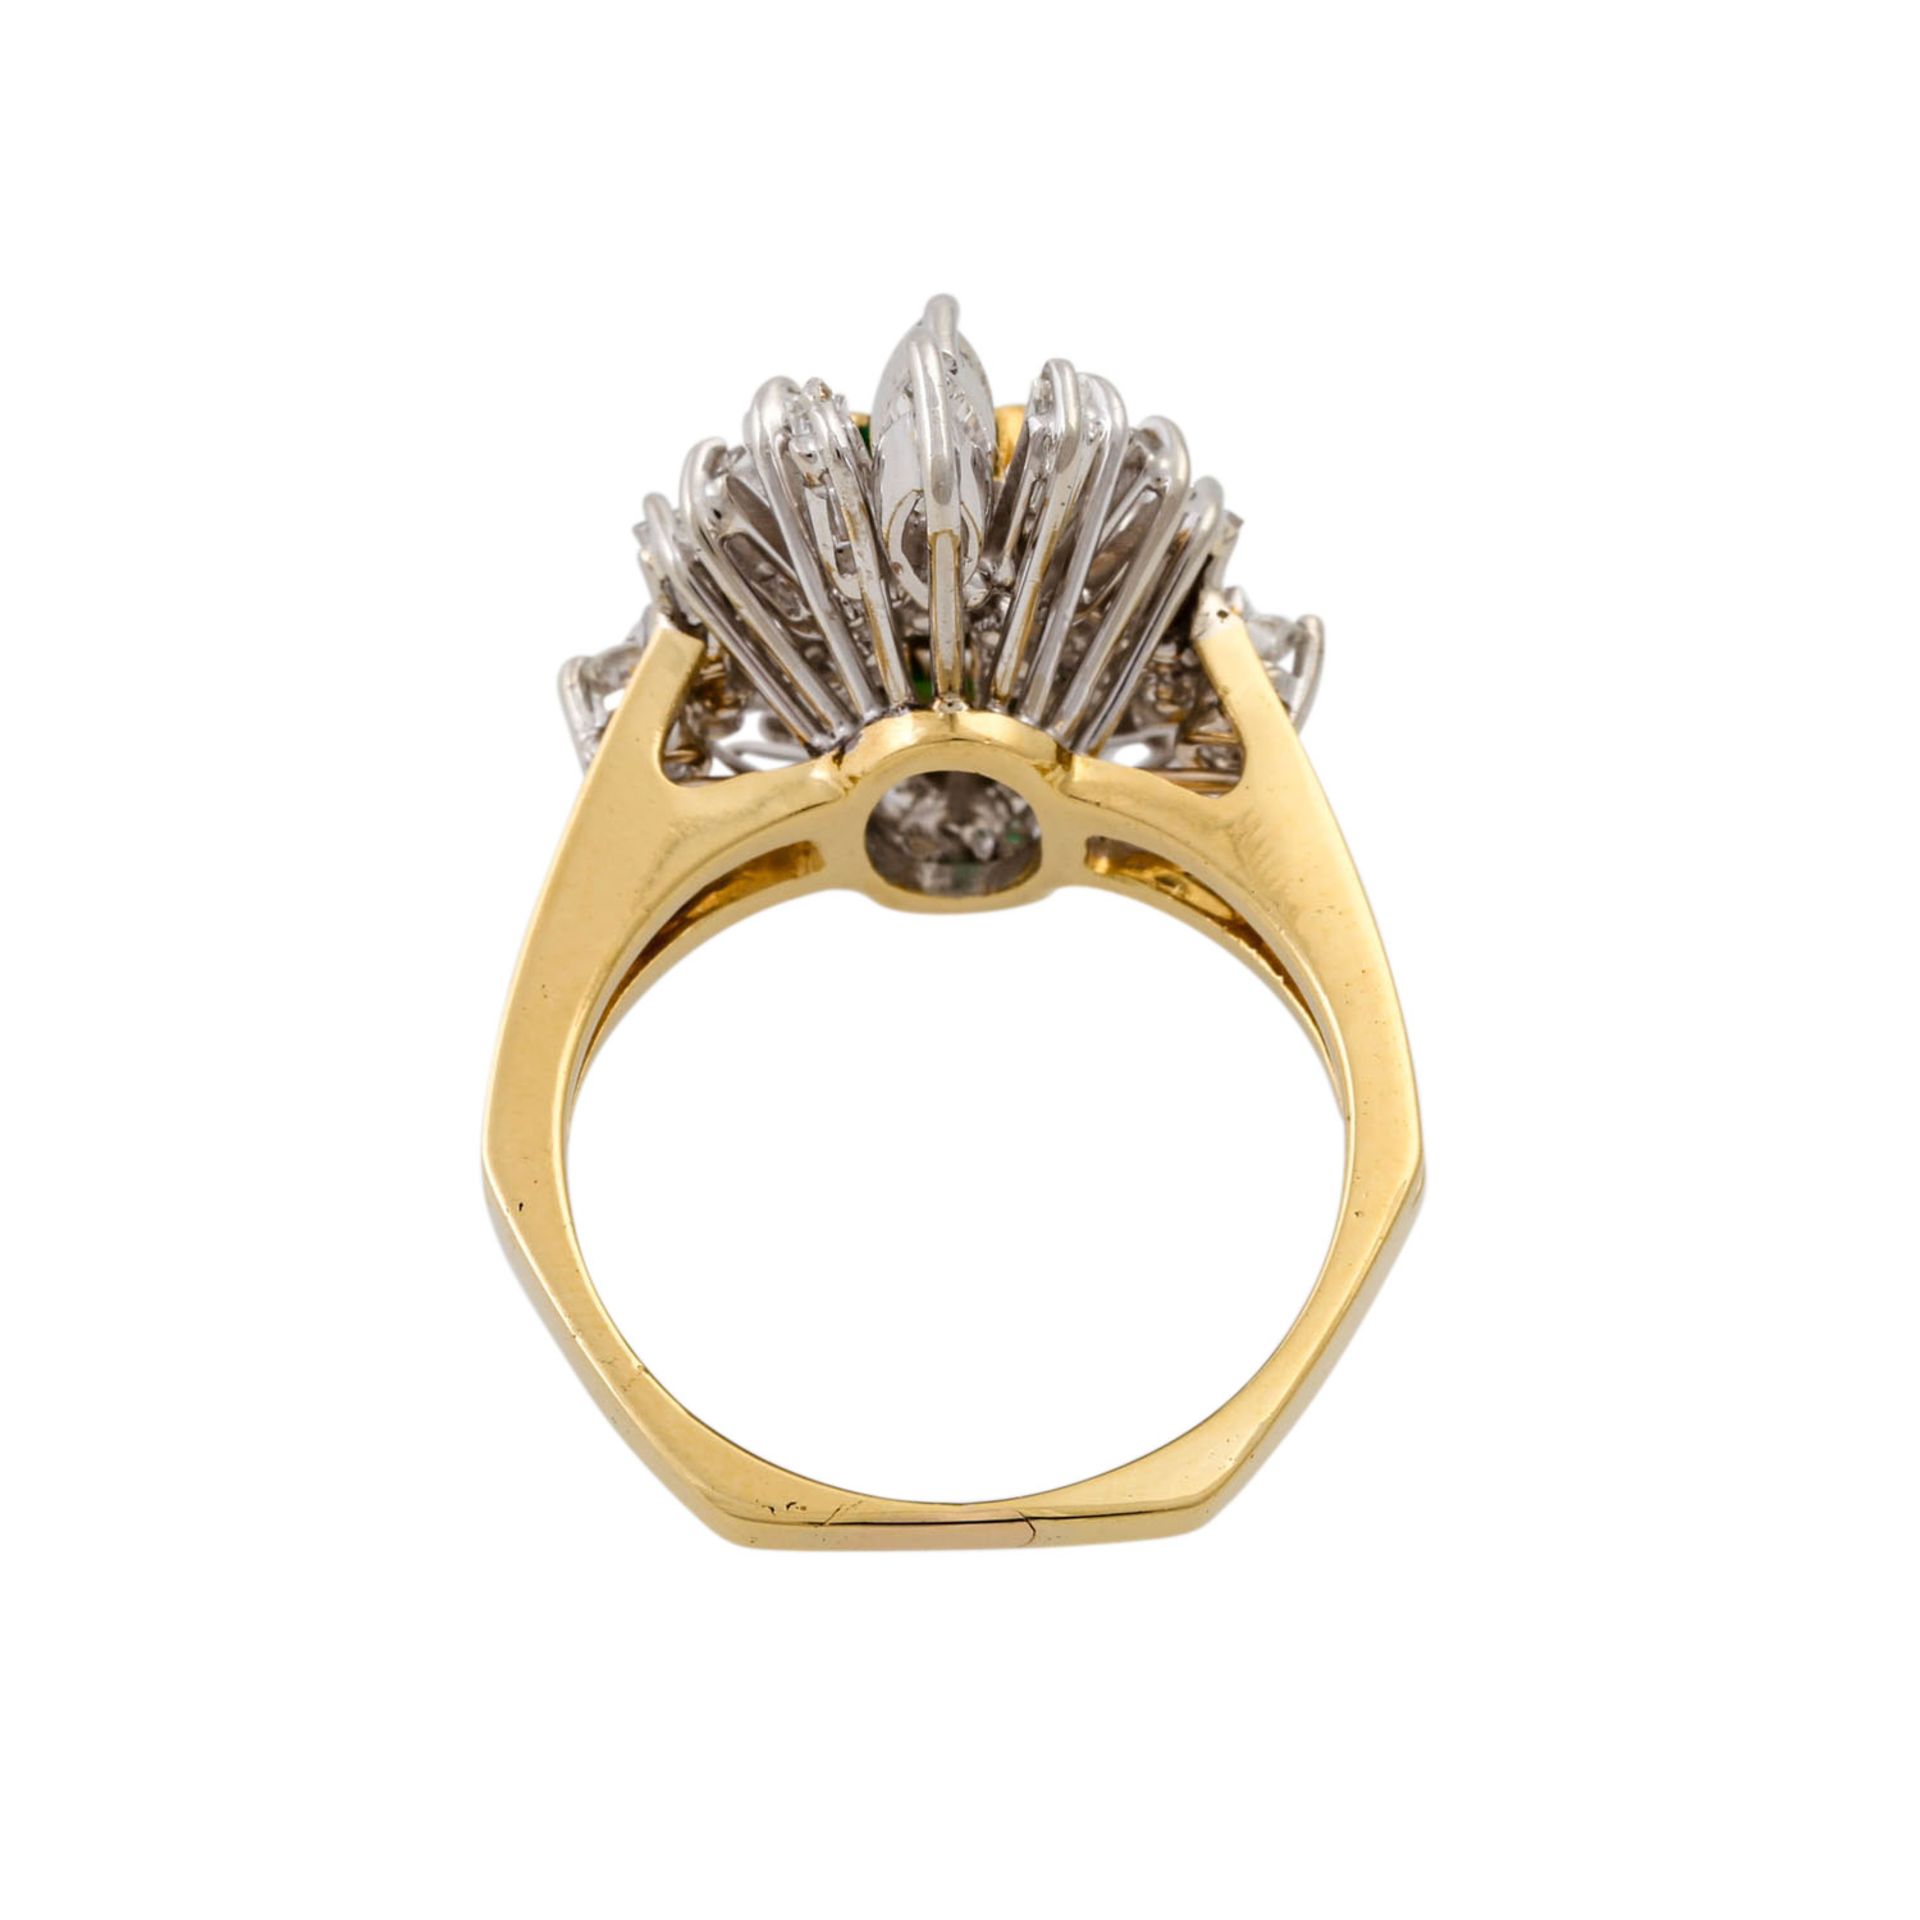 Ring mit Smaragd und Diamanten zus. ca. 1 ct,gute Farbe u. Reinheit, GG/WG 18K, 7,4 gr - Bild 4 aus 4